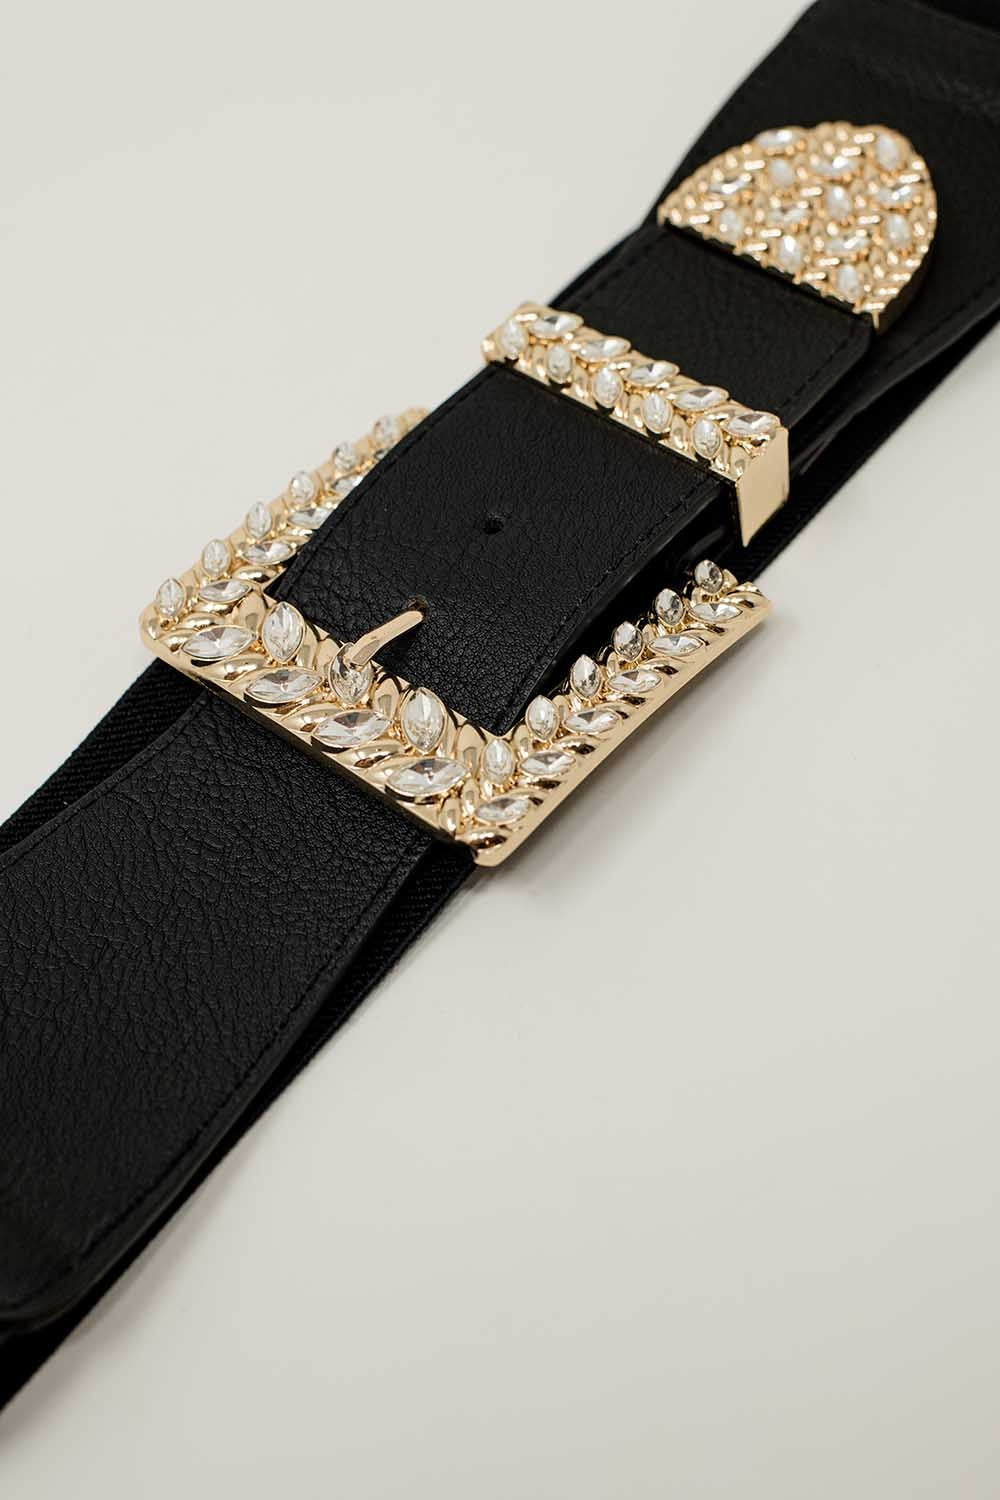 Cintura nera elastica con fibbia e punta in metallo con strass.